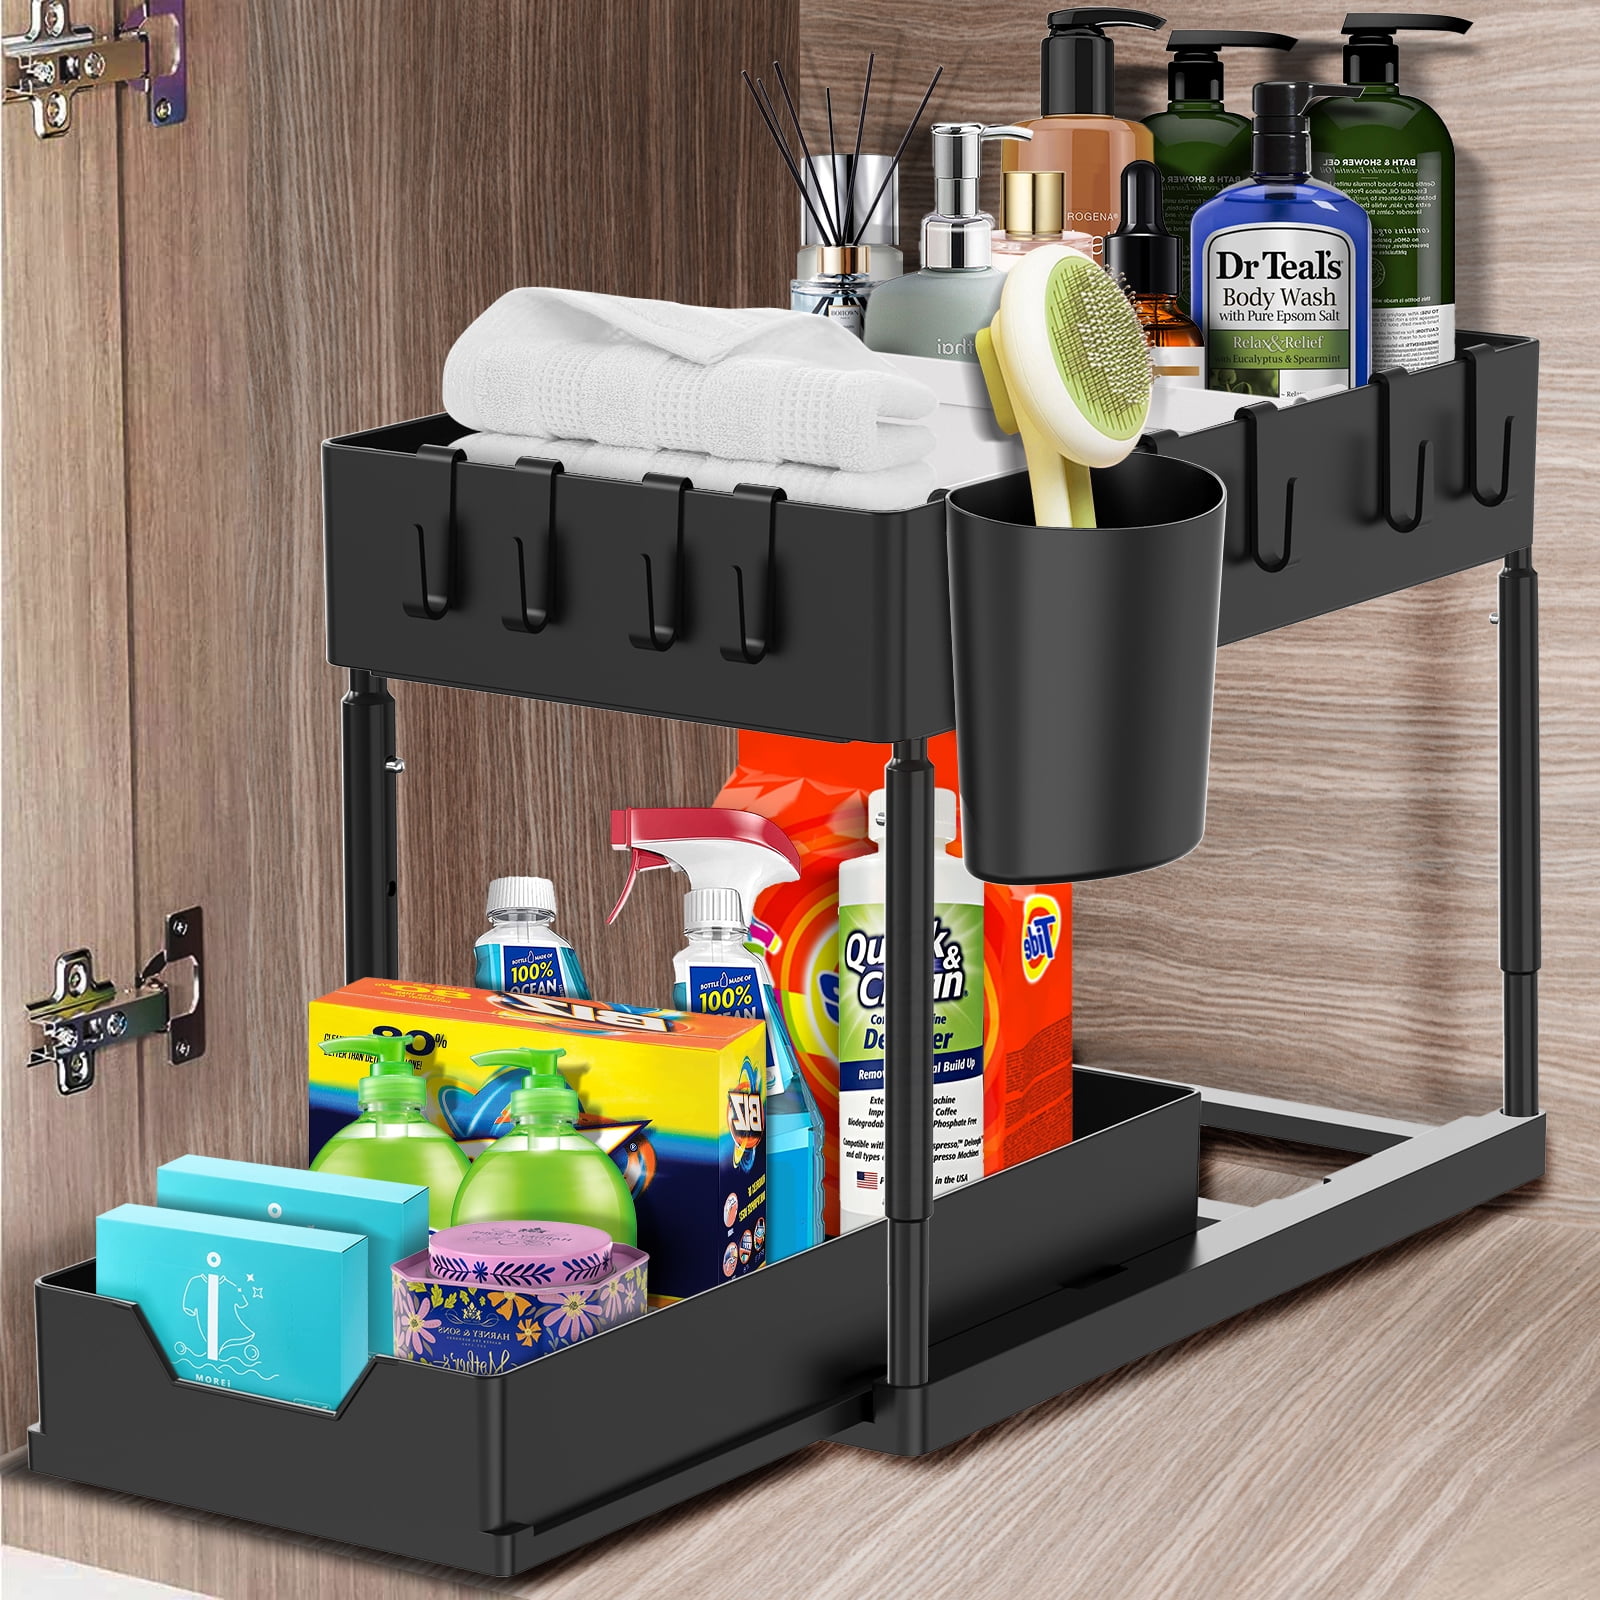 Storagebud 2 Tier Non-Slip Grip Kitchen Under Sink Organizer - Bathroom Cabinet Organizer with Utility Hooks and Side Caddy - 1 Pack - White